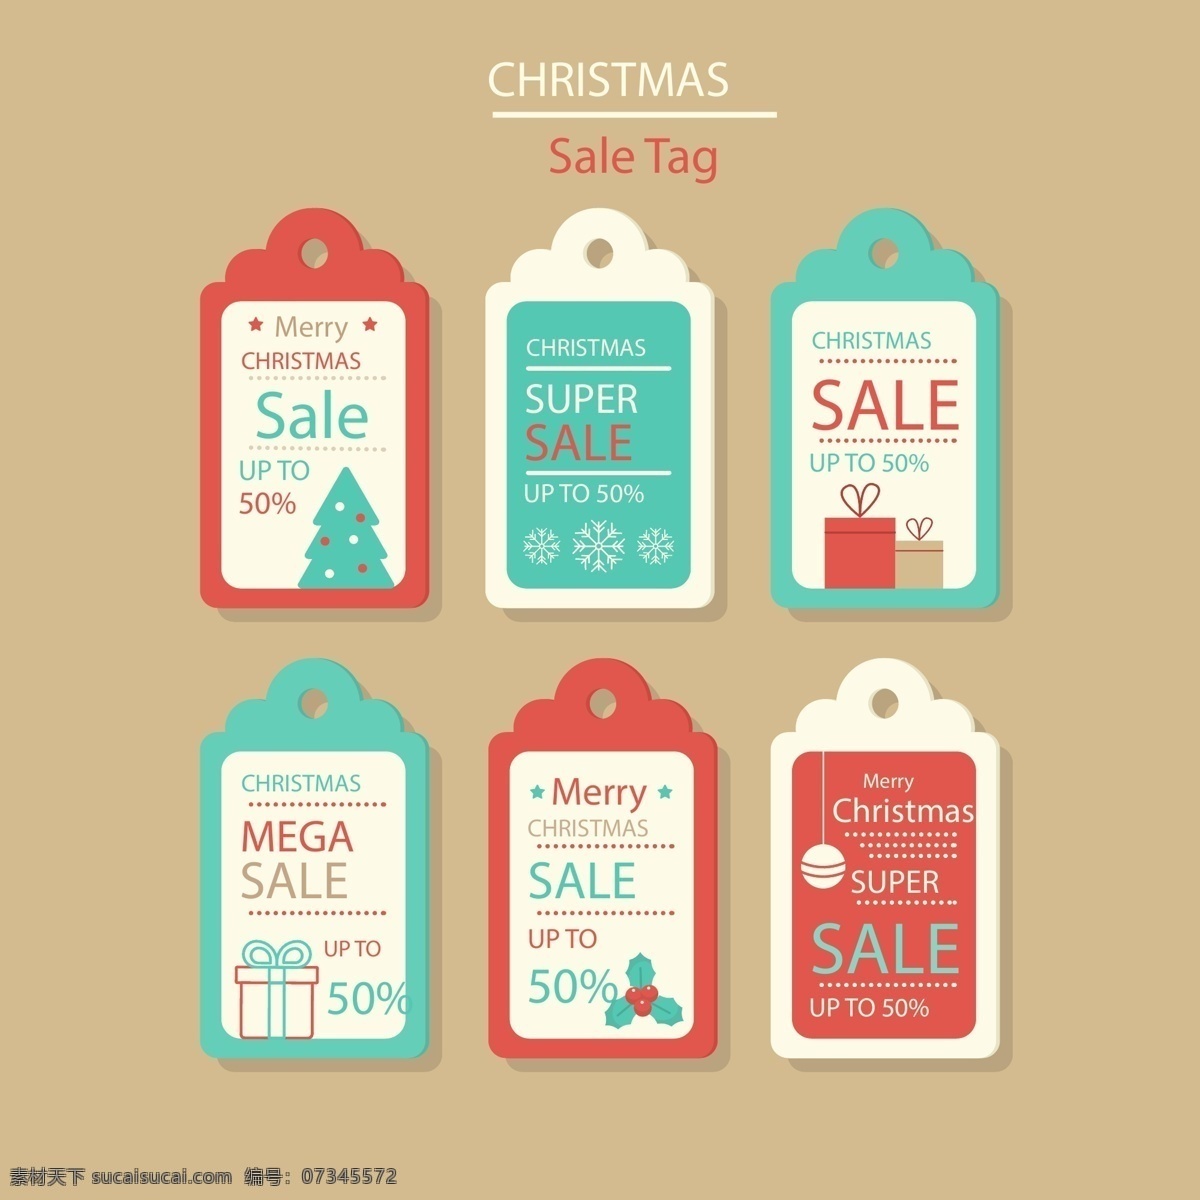 蓝色 红色 圣诞 标签 圣诞节 促销 矢量素材 英文 圣诞树 礼物 优惠